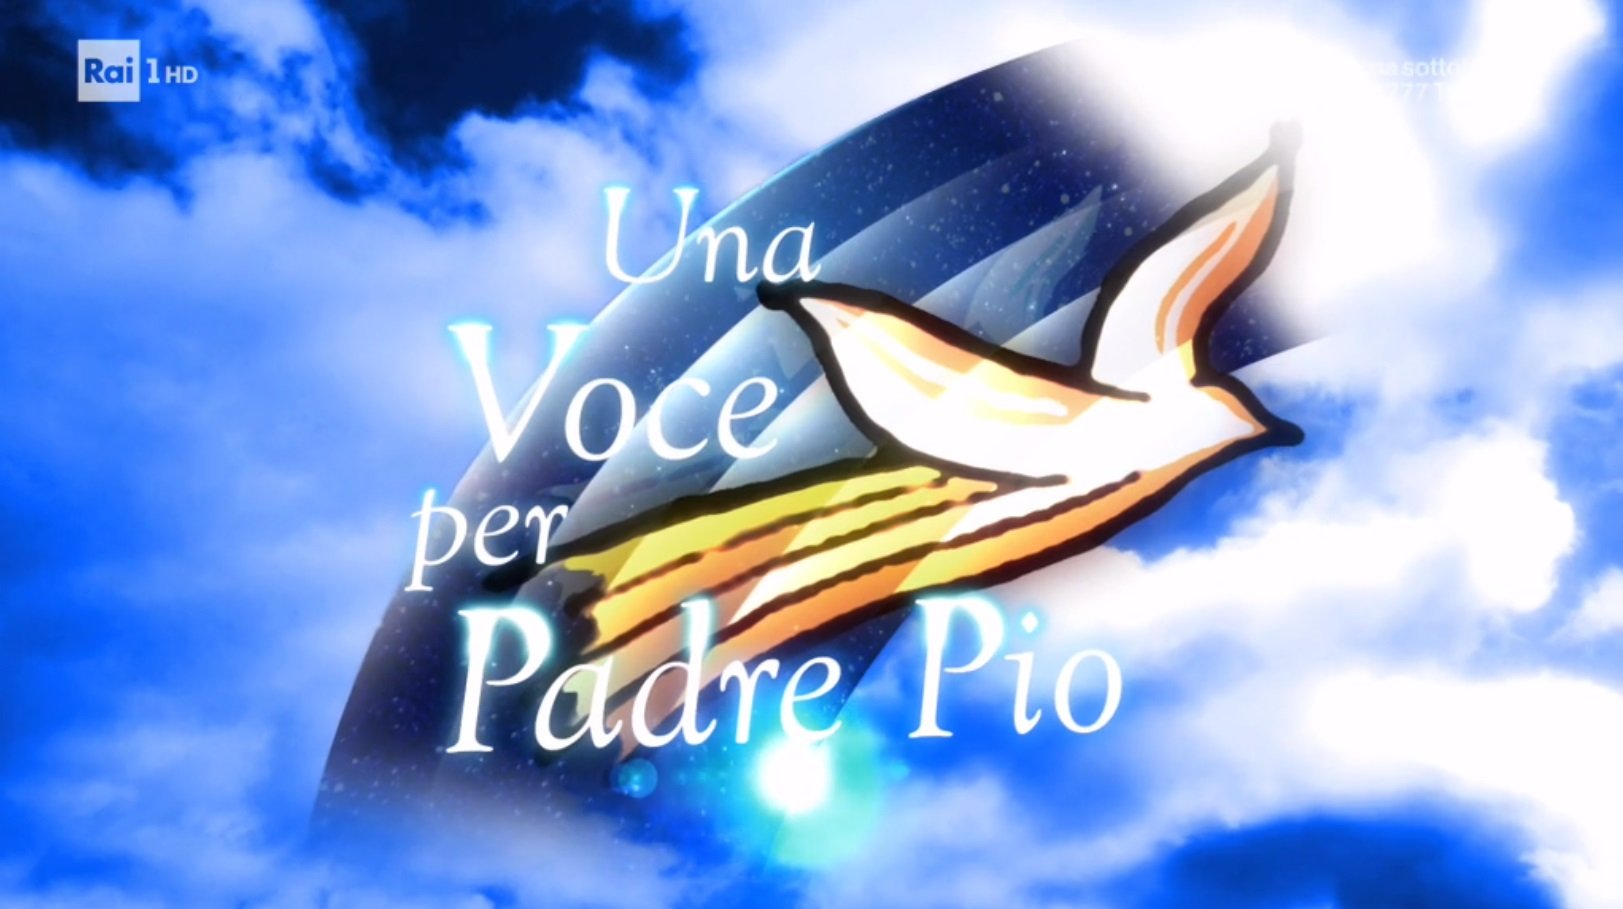 Ascolti tv mercoledì 3 luglio: Una voce per Padre Pio, Davos, Chi l’ha visto?